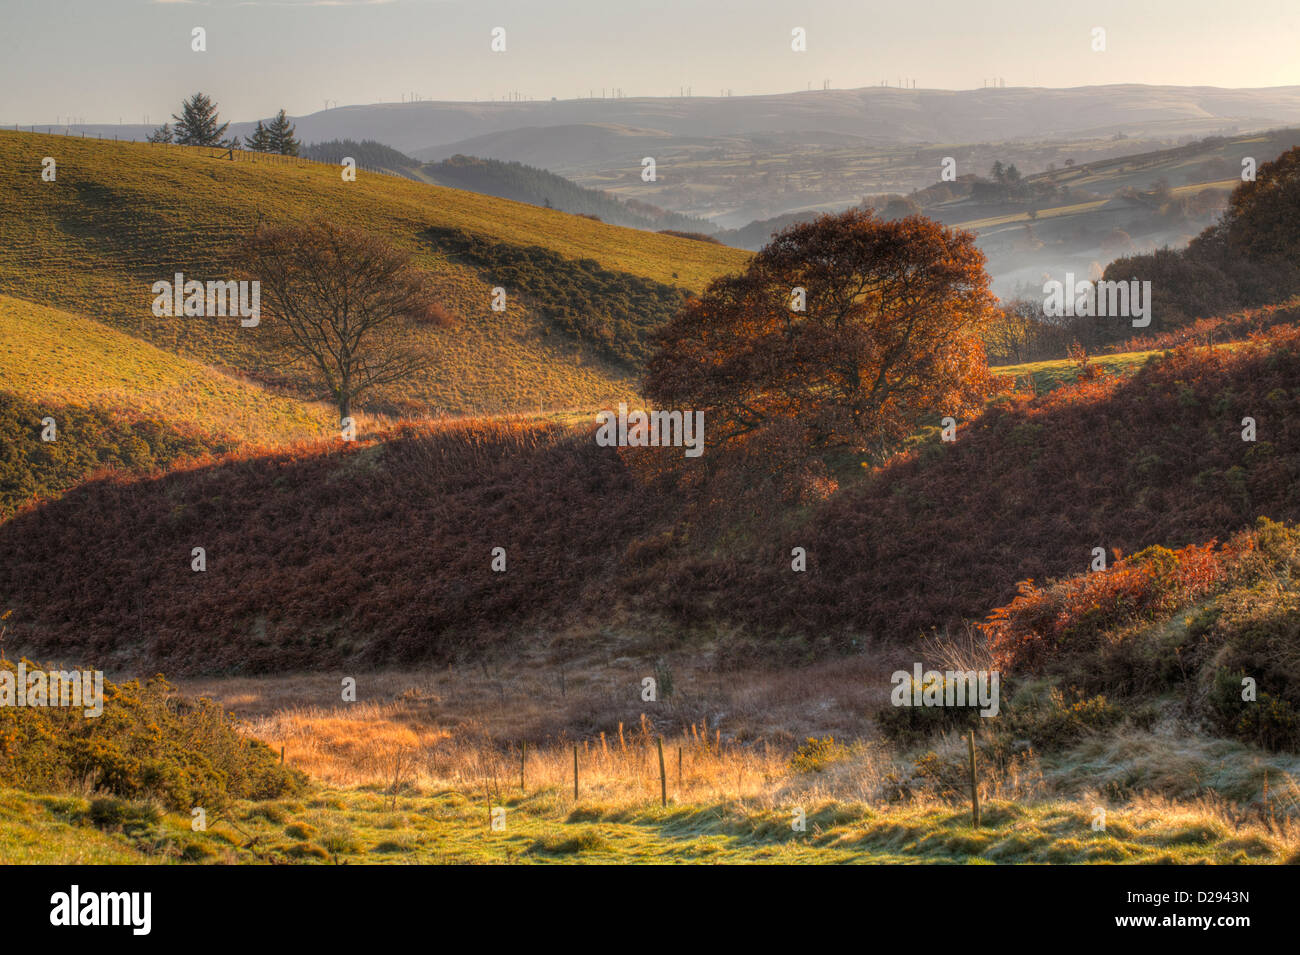 Vue de la colline des terres agricoles et la haute vallée de la Severn (Hafren). Près de Llanidloes, Powys, Pays de Galles. Novembre. Banque D'Images